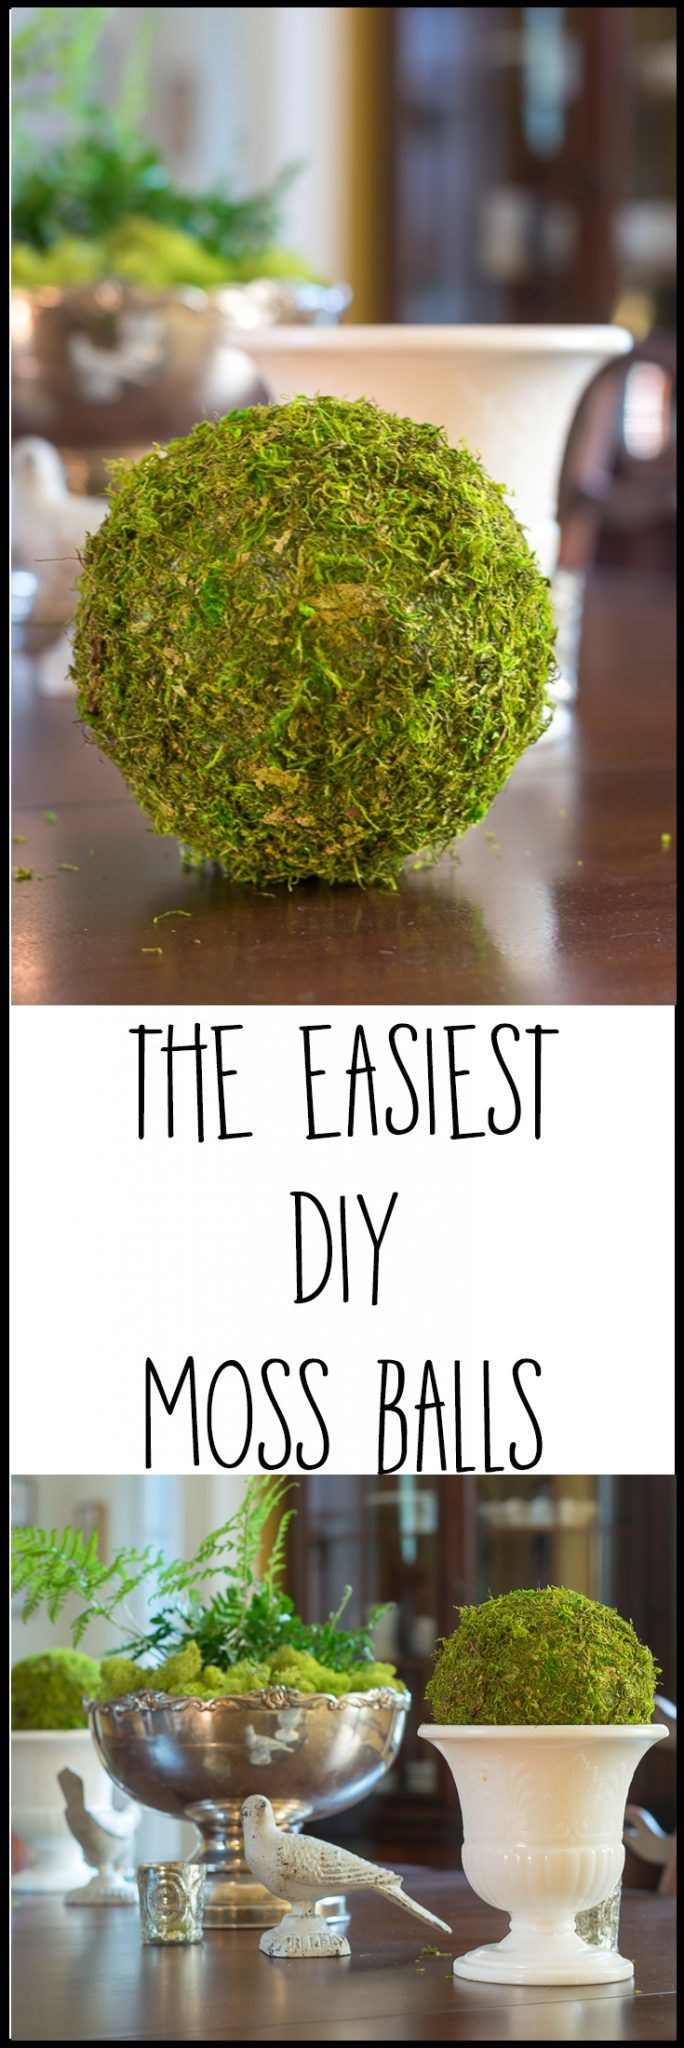 DIY Moss Balls: DIY Spring craft ideas - How to make a decorative moss balls for spring decor